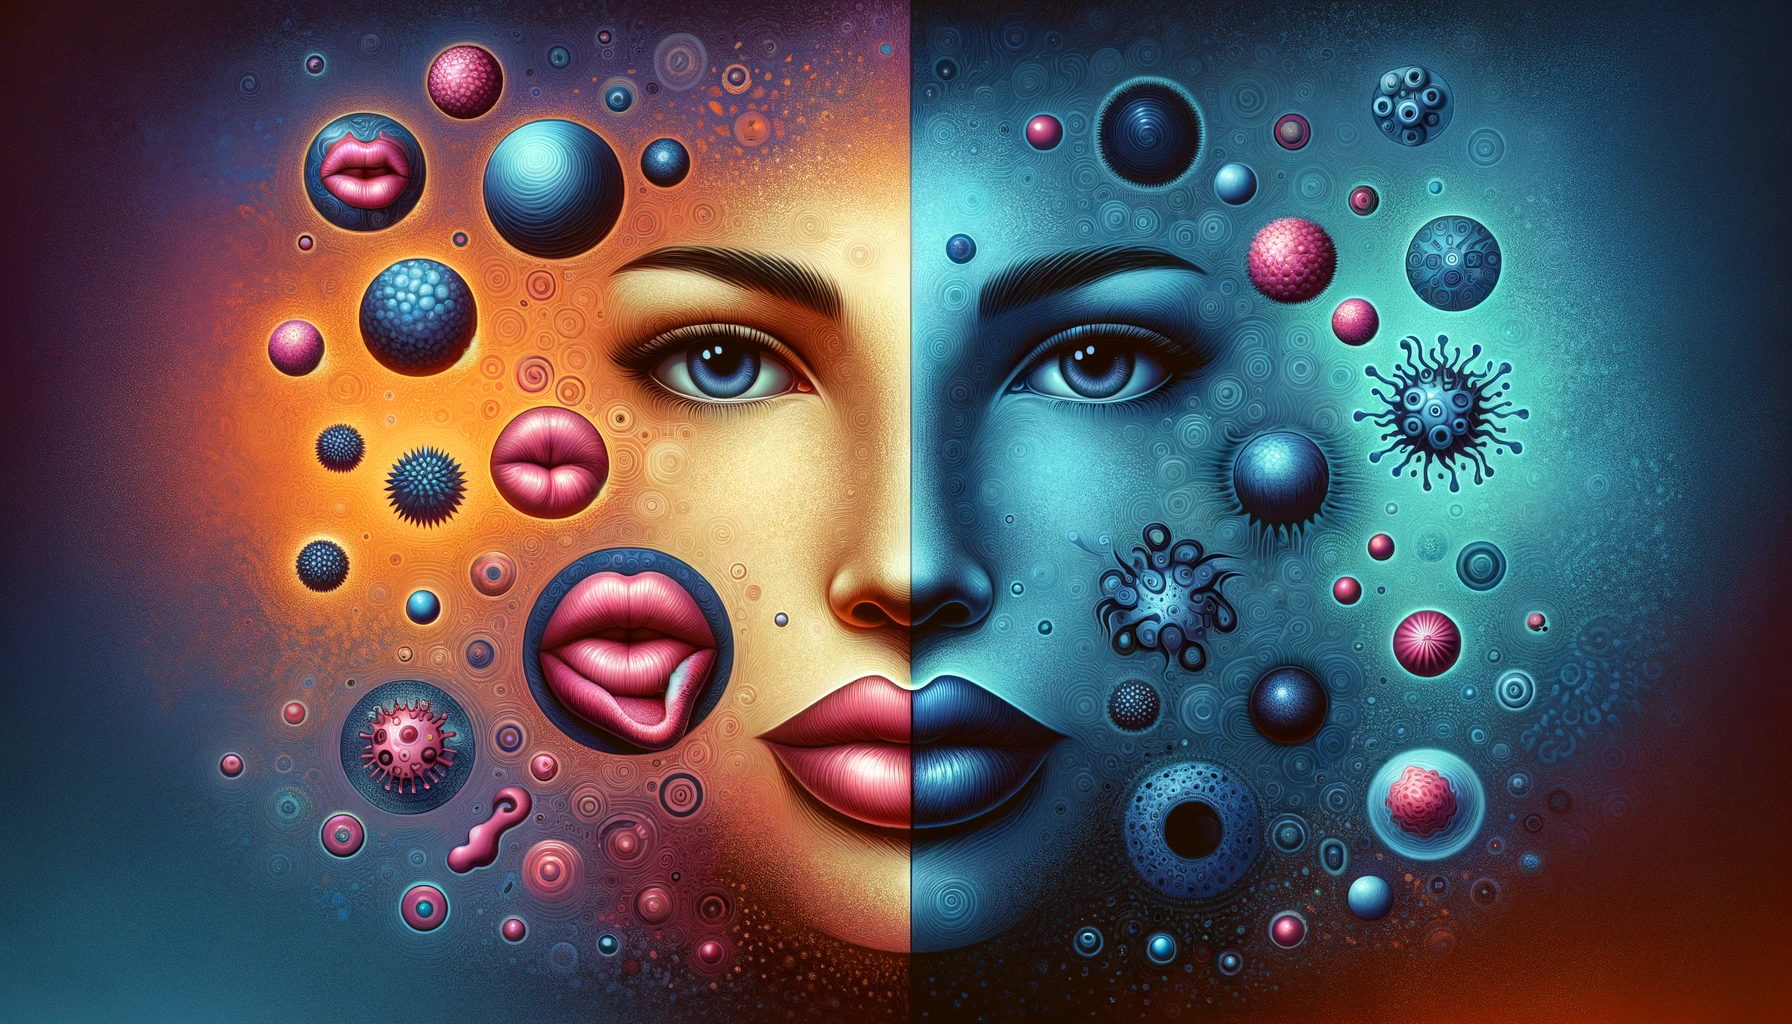 Kunstnerisk framstilling av herpes,  HSV-1 og HSV-2, delt i to, med abstrakte symboler og farger som skiller dem